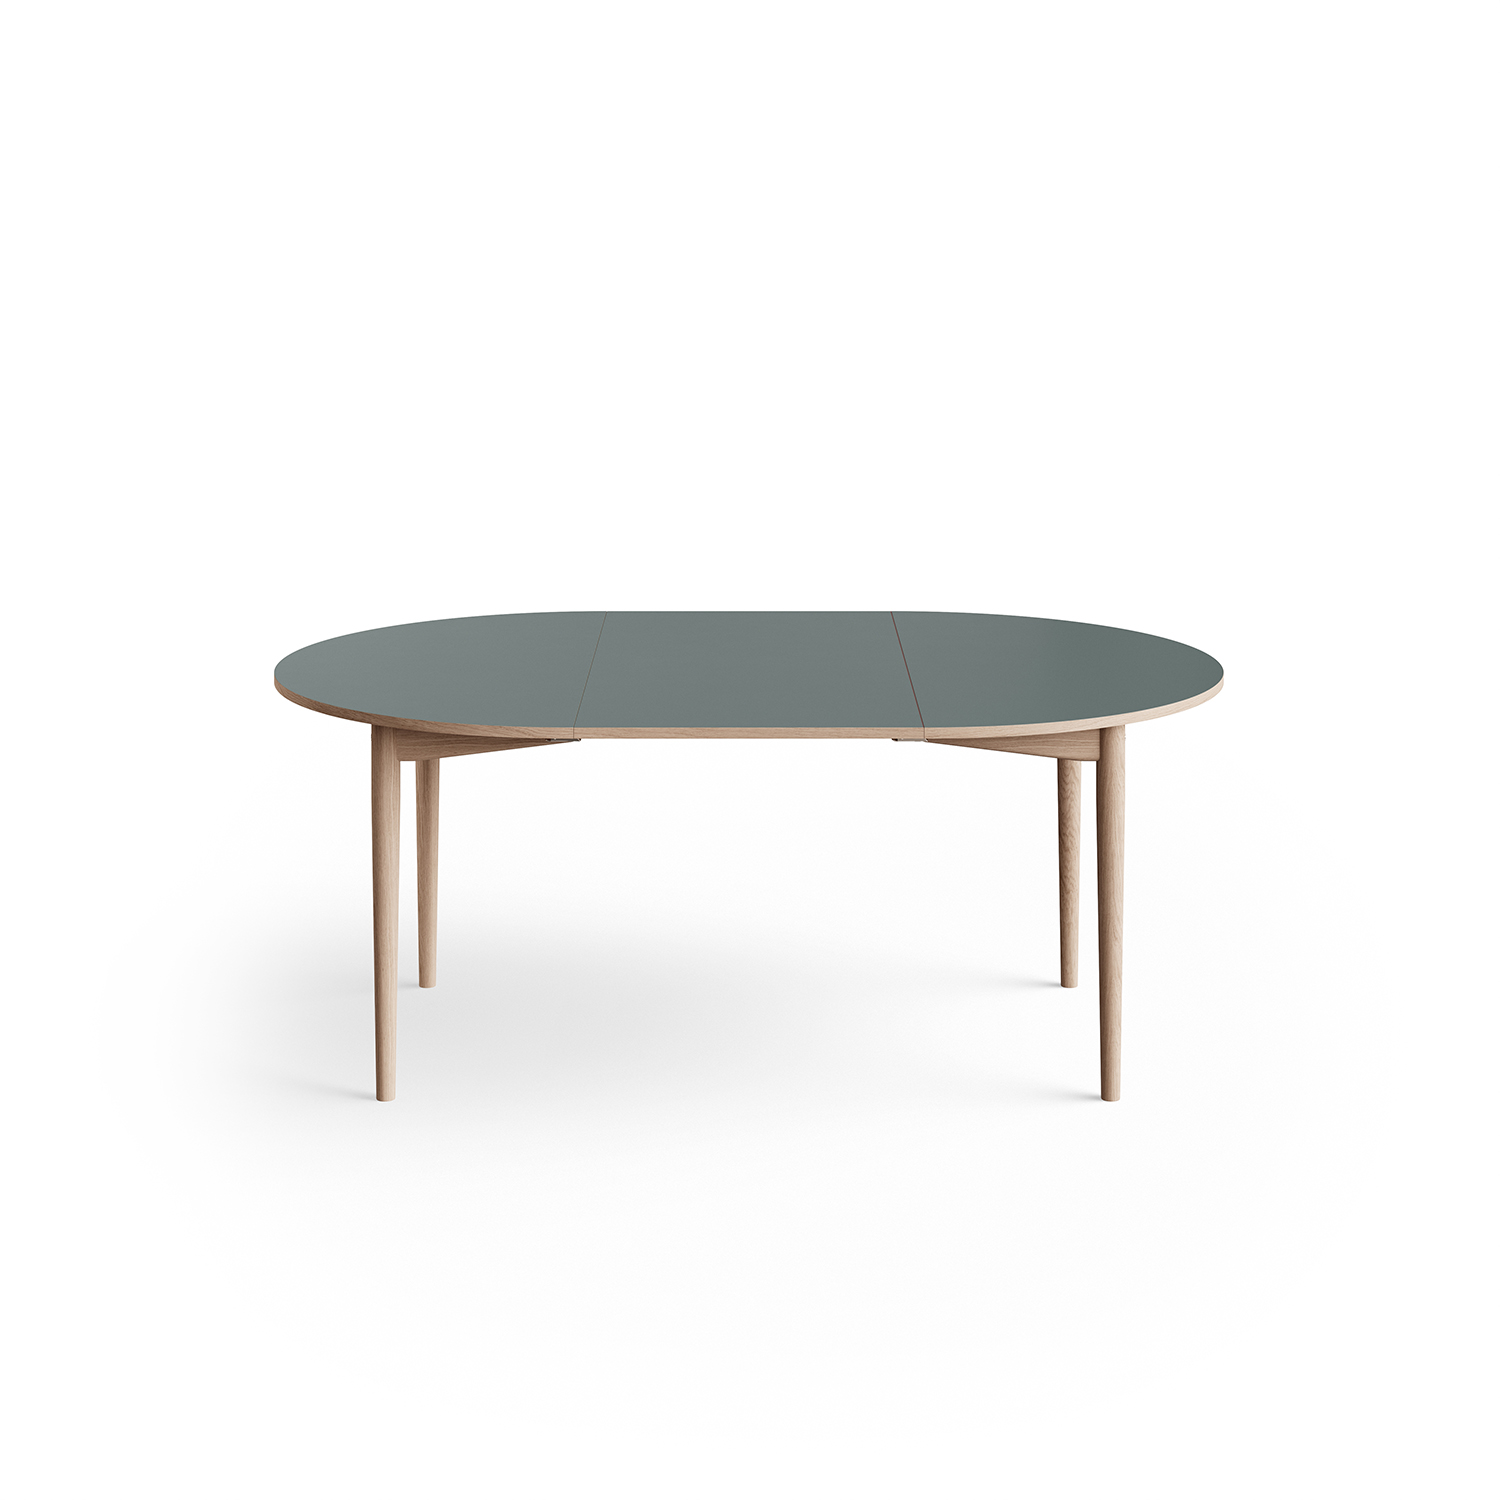 Eikund - Oma dining table extendable